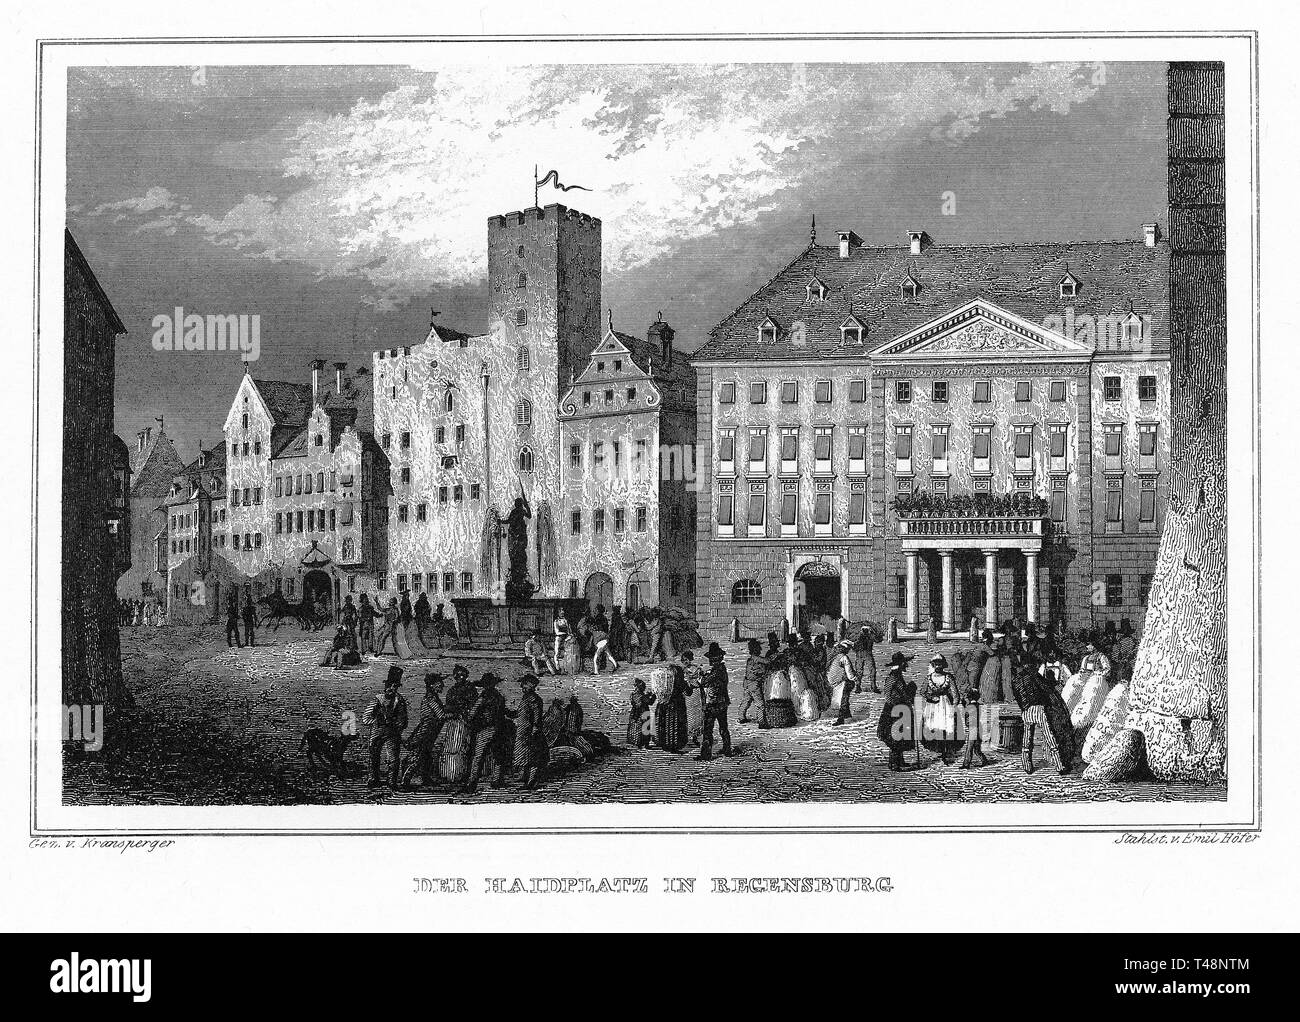 Haidplatz, Regensburg, Zeichnung von Kransperger, Gravur von Emil Hofer, Stahlstich von 1840-54, Königreich Bayern, Deutschland Stockfoto